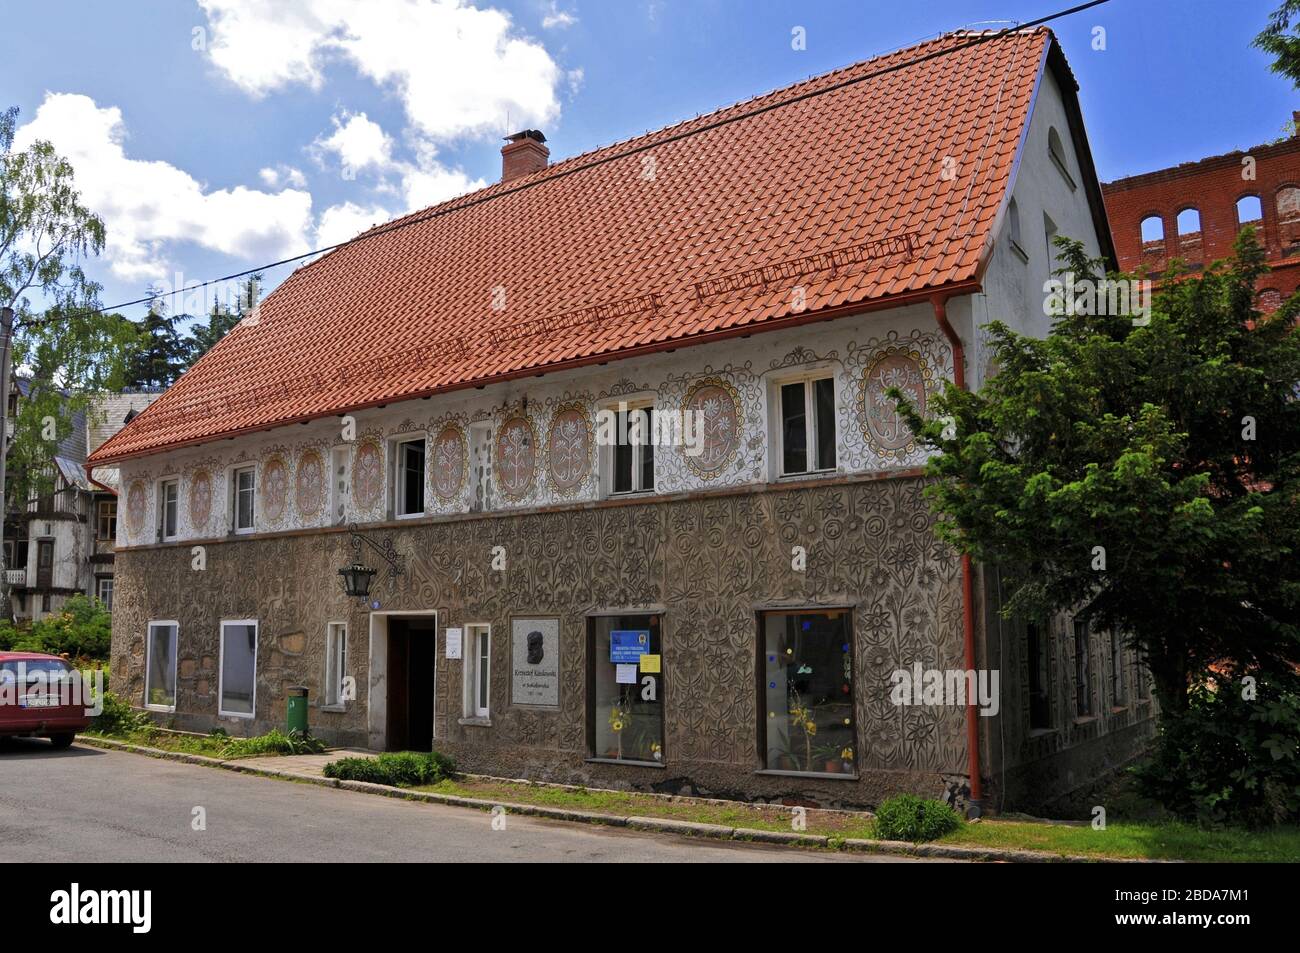 The house which Krzysztof Kieslowski was living in. Sokolowsko, Lower Silesian Voivodeship, Poland. Stock Photo